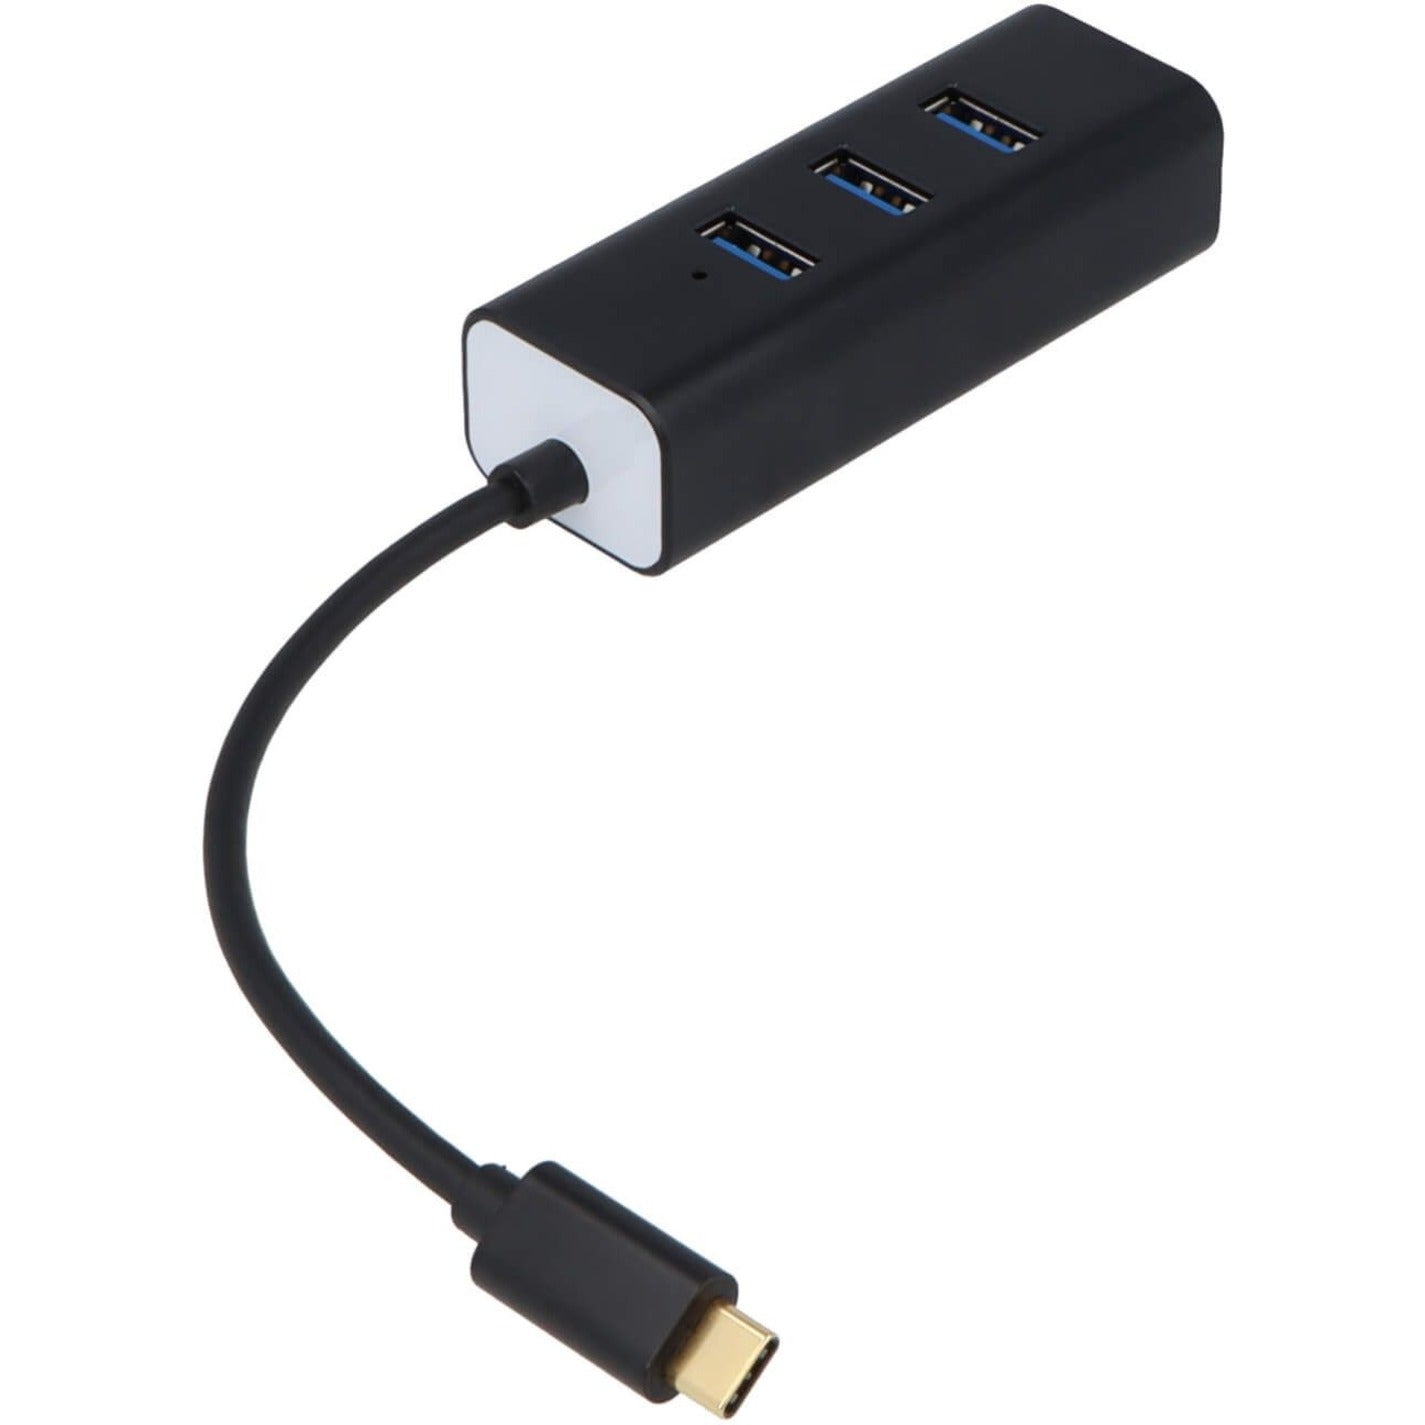 VisionTek 901434 USB-C 4 Port USB 3.0 Hub Mac/PC Kompatibel 1 Jahr Garantie